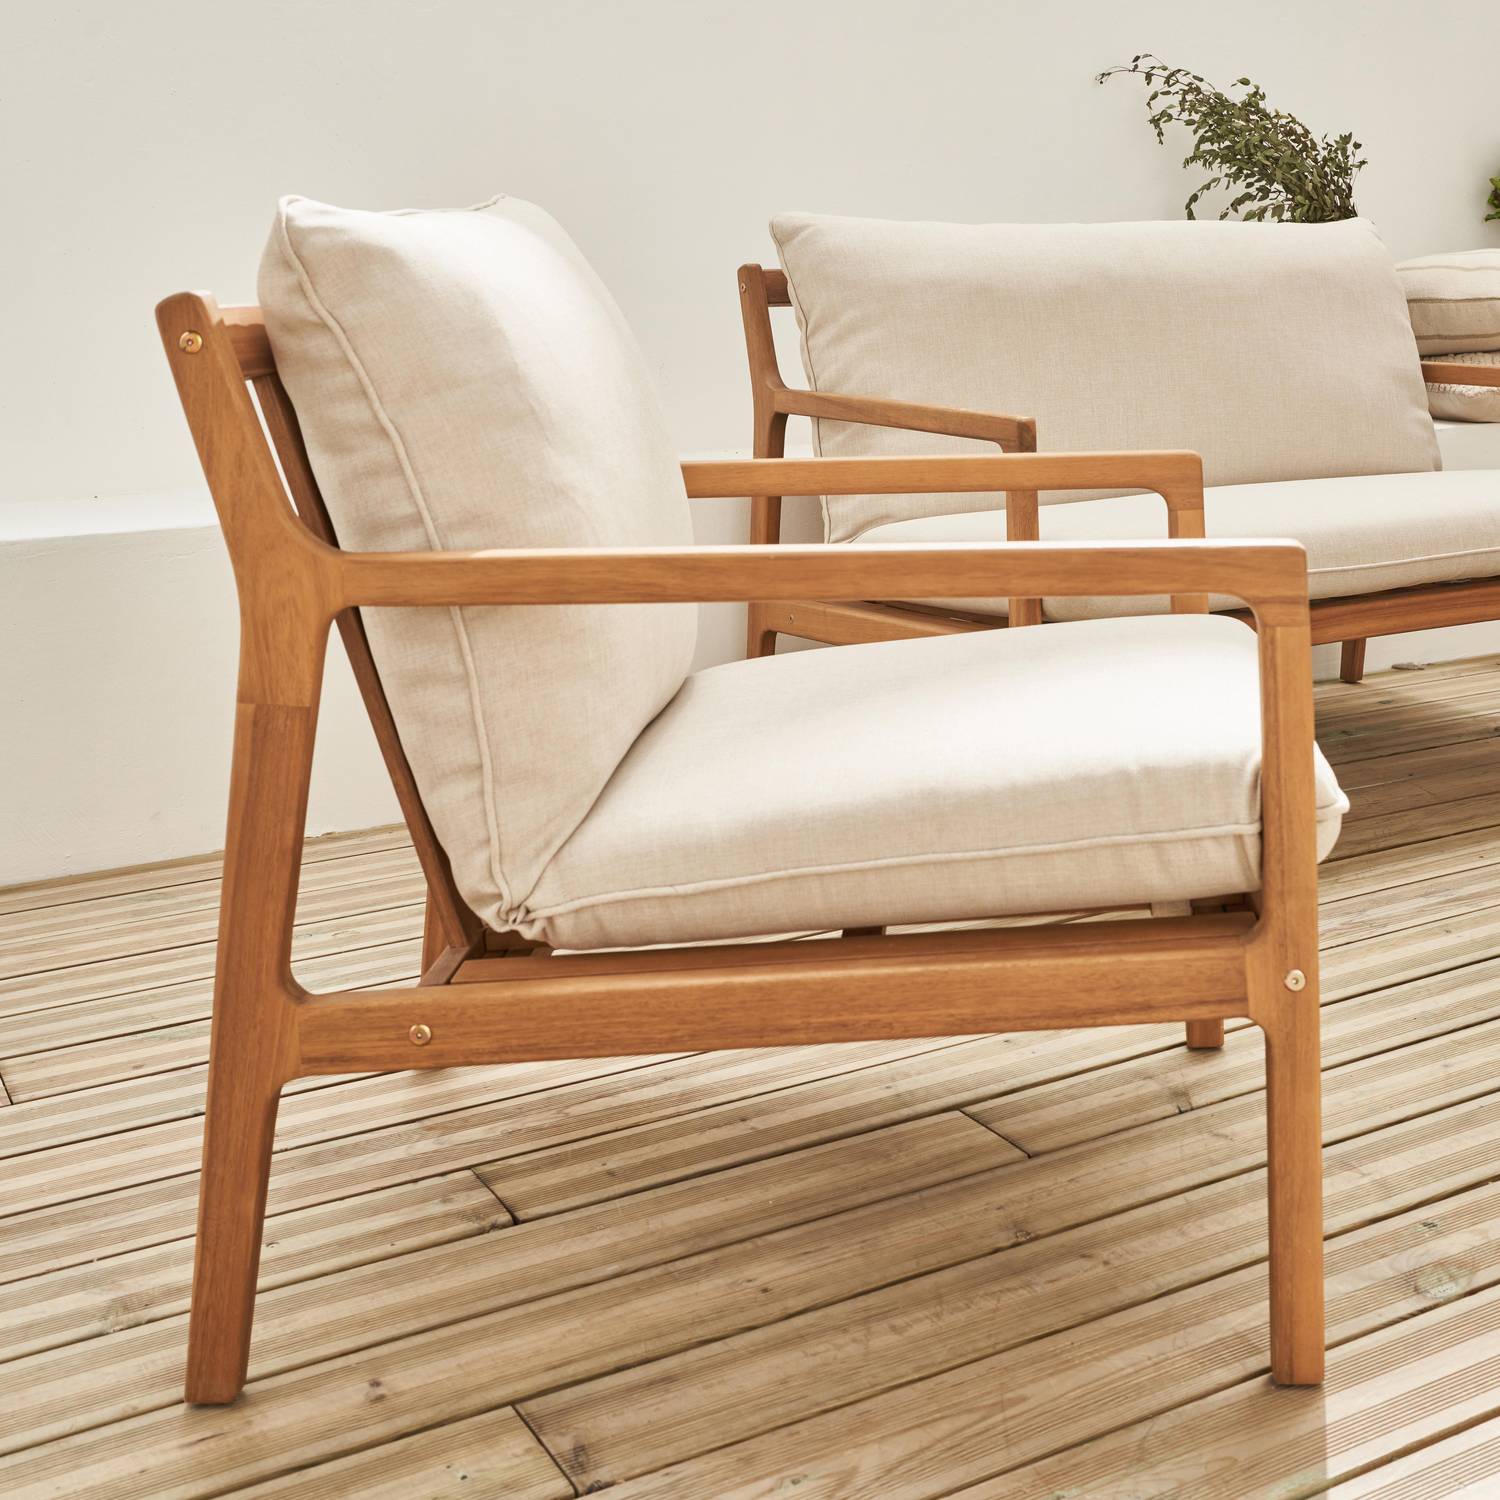 Gartenmöbelset aus FSC-Akazienholz, 1 Tisch, 1 Bank, 2 Sessel, beige, abziehbare Kissenbezüge - Nalda Photo5